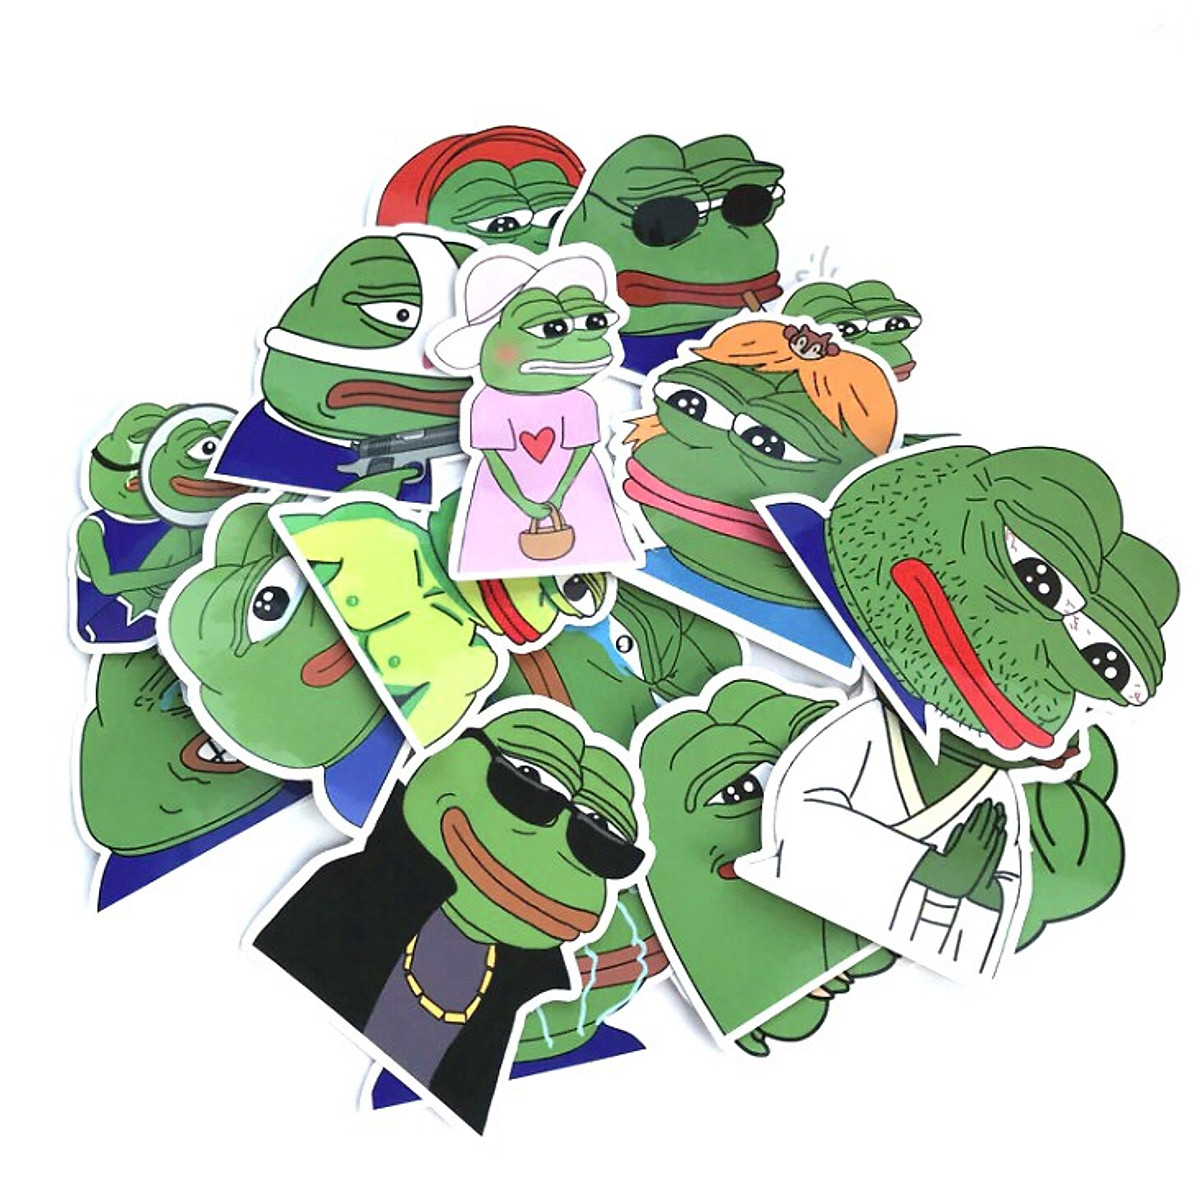 Sticker ếch xanh Pepe là một trong những sticker được sử dụng nhiều nhất trên các nền tảng mạng xã hội. Hãy trải nghiệm sự vui vẻ và hài hước khi sử dụng nó trong các cuộc trò chuyện.